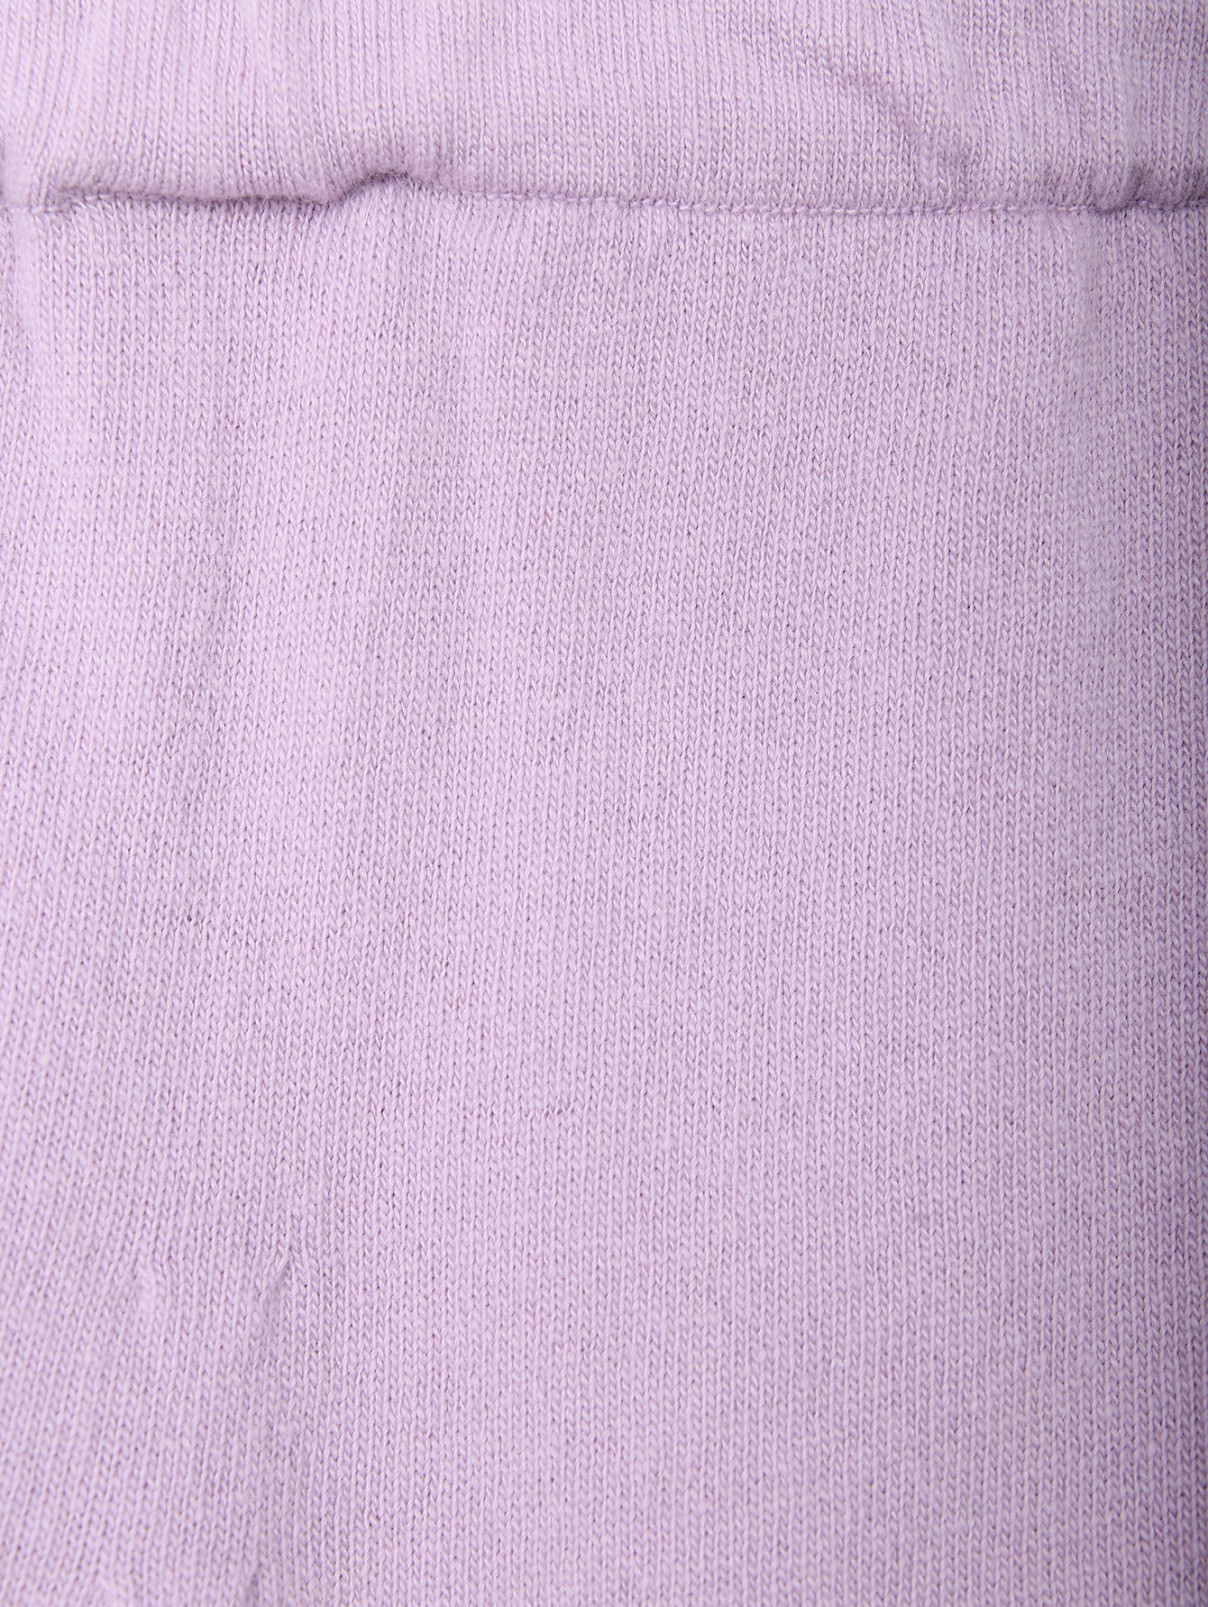 Брюки из шерсти на резинке Shade  –  Деталь1  – Цвет:  Фиолетовый